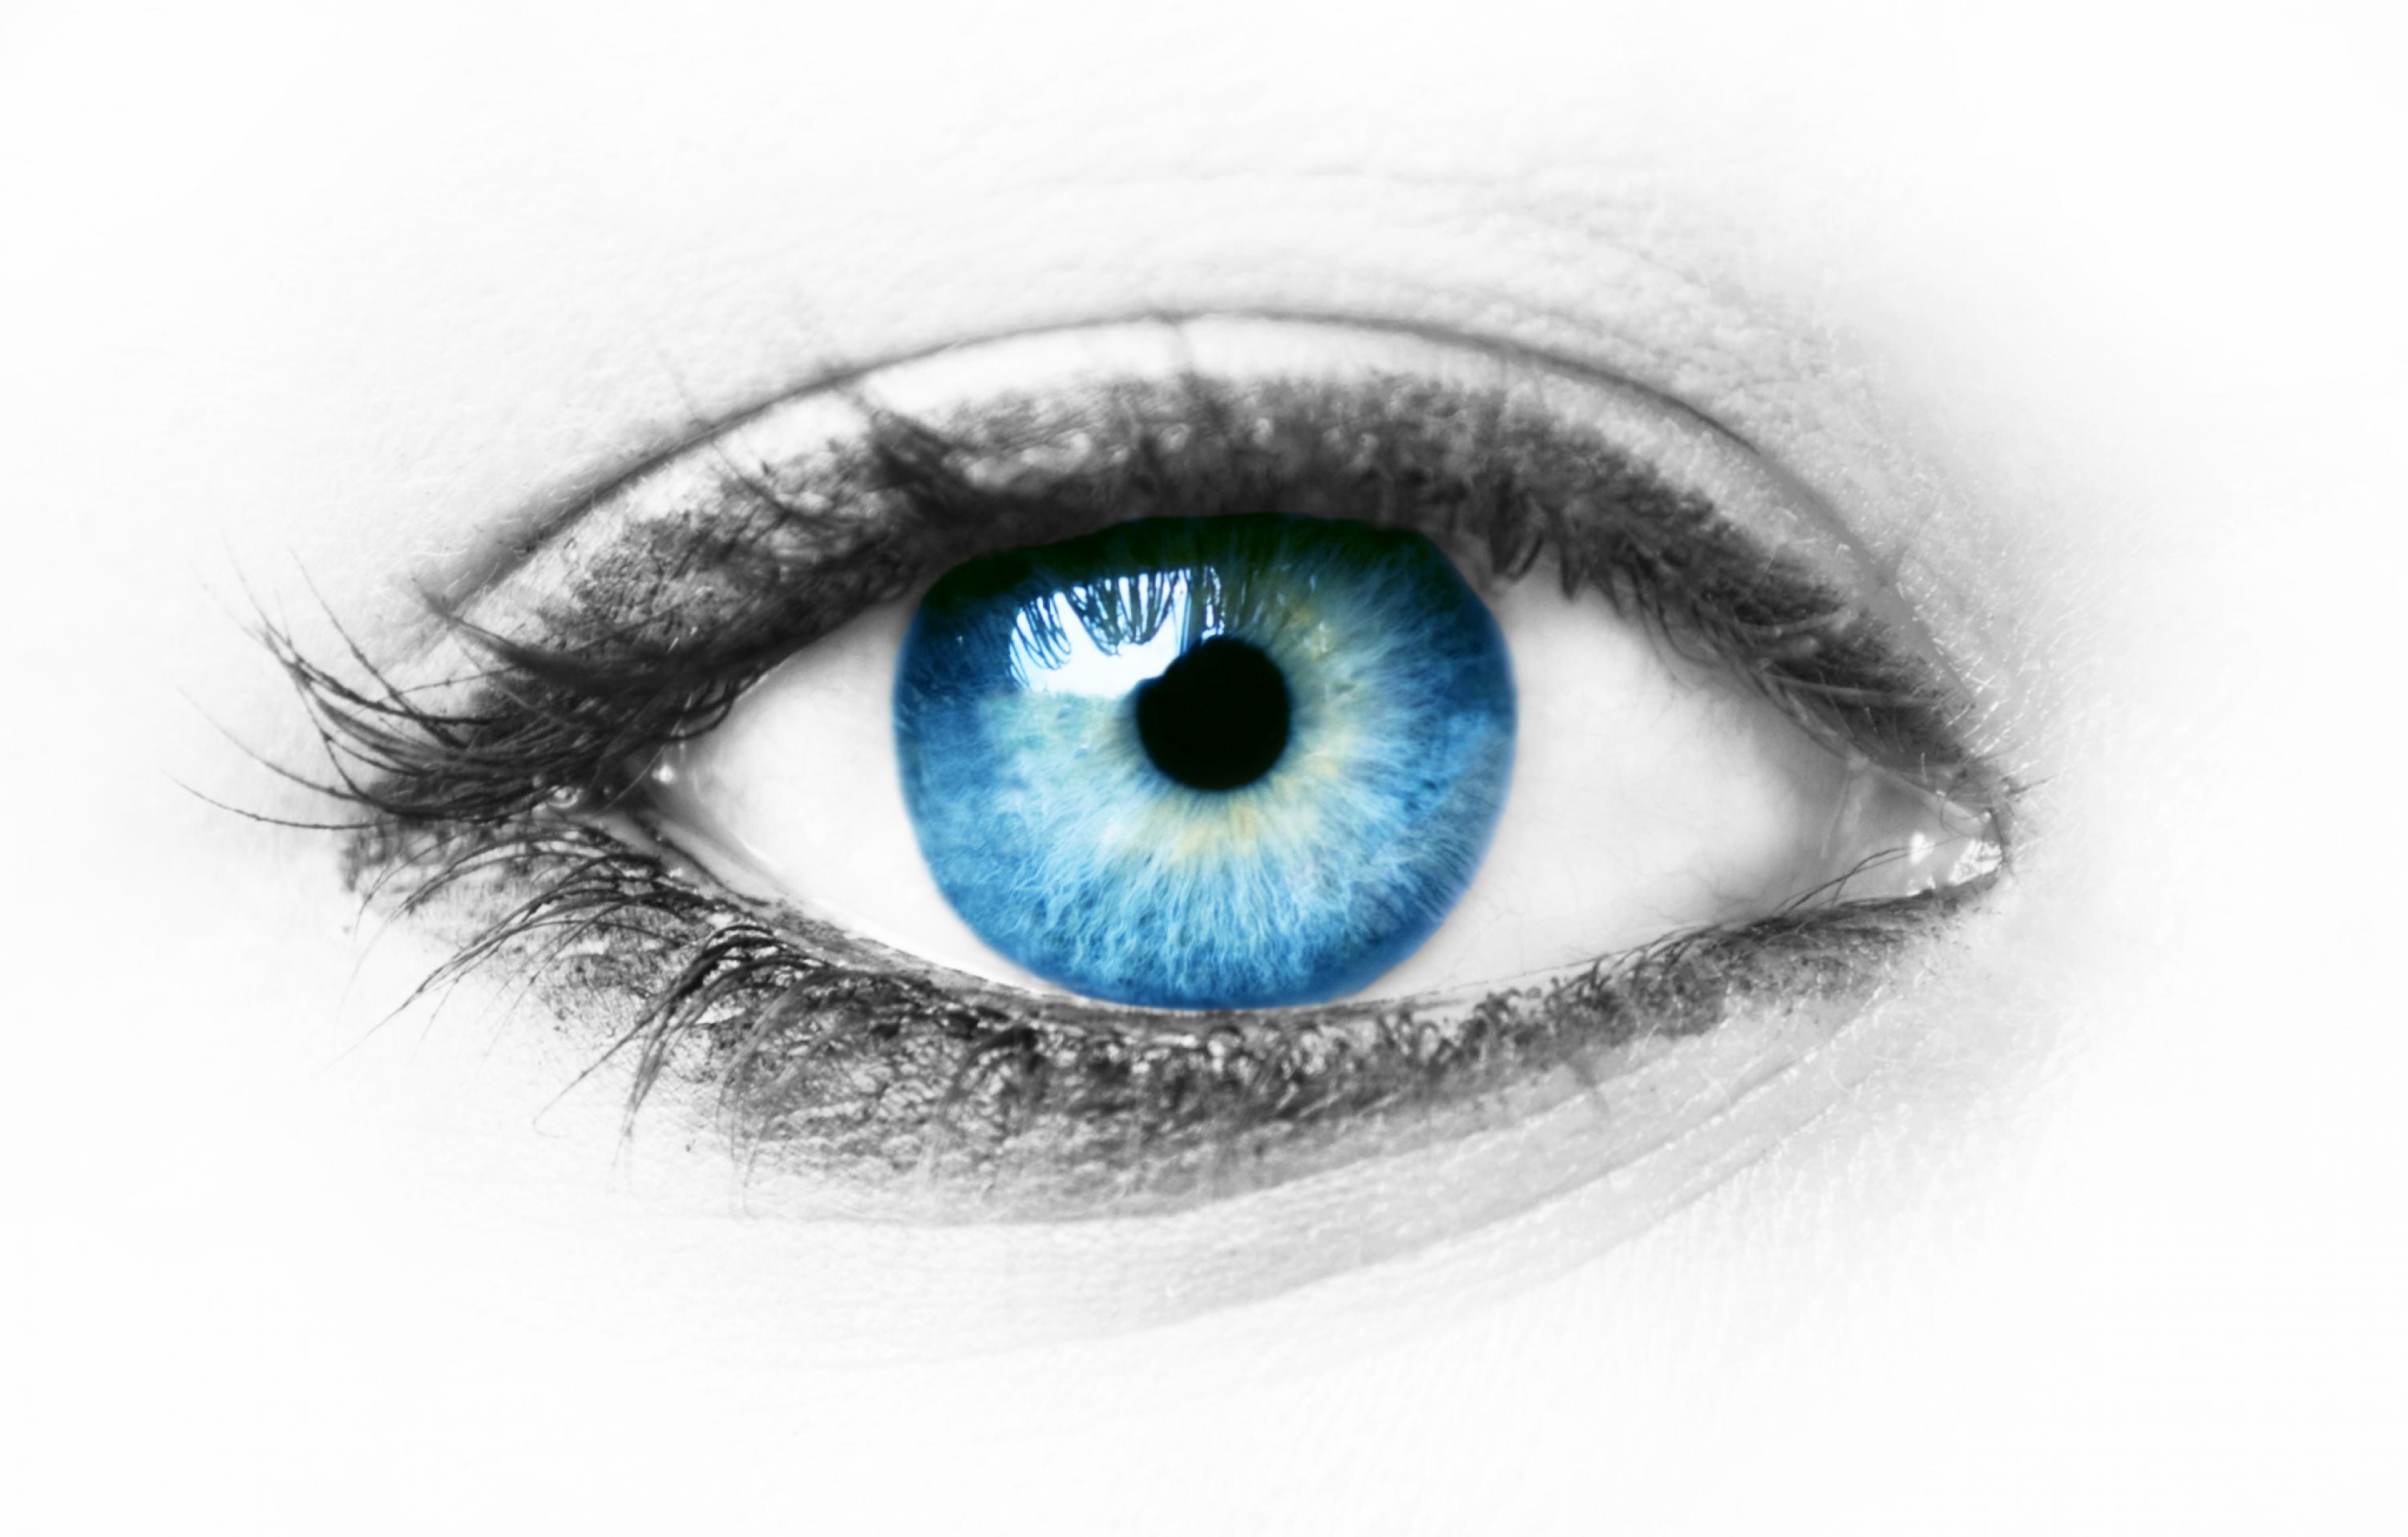 Zu sehen ist die künstlerische Fotografie eines menschlichen Auges mit einer strahlendblauen Iris und kleiner, schwarzer Pupille. Der Hintergrund ist weiß, Liedfalte, Wimpern und die Umrandung des Auges sind grau bis schwarz. Das isolierte, ästhetisch wirkende Auge scheint vor dem hellen Hintergrund regelrecht zu schweben.